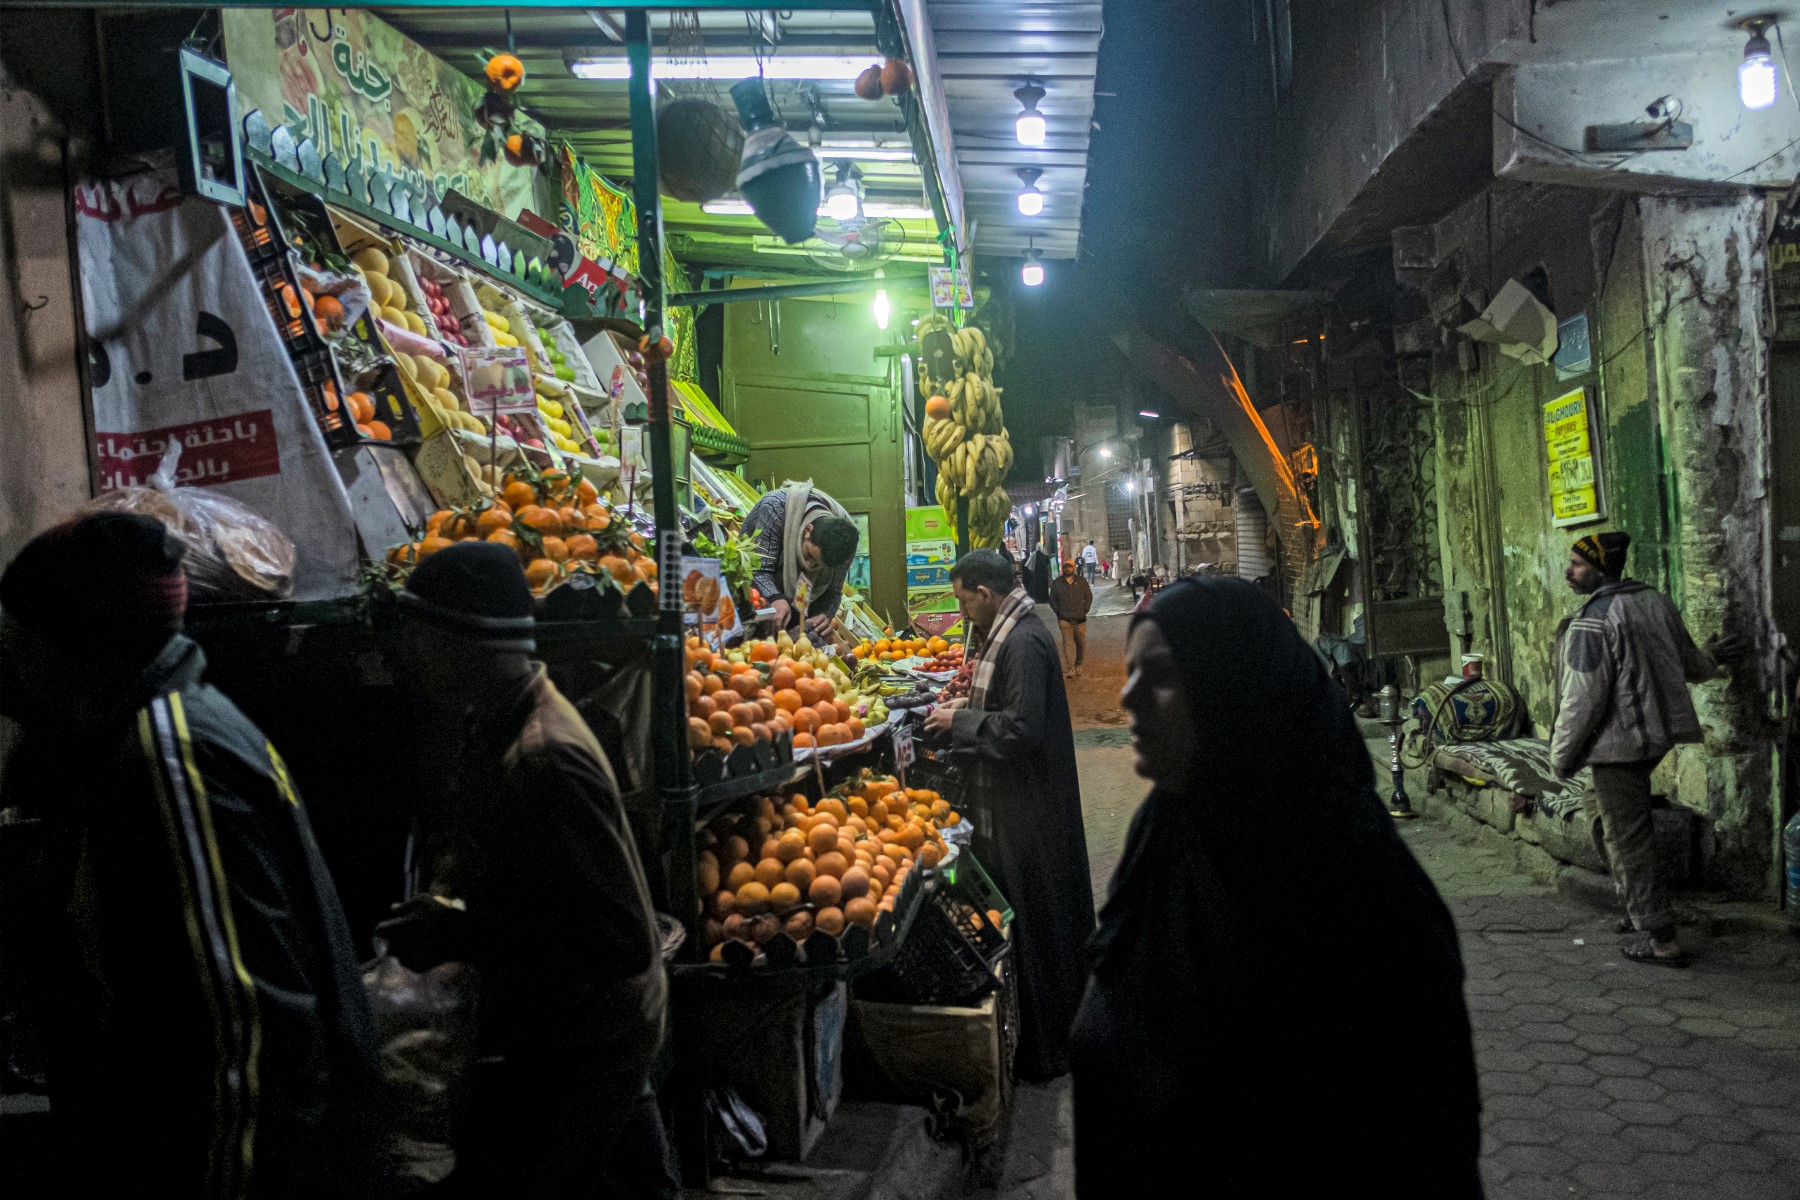 Egypt's economic turmoil squeezes struggling middle class